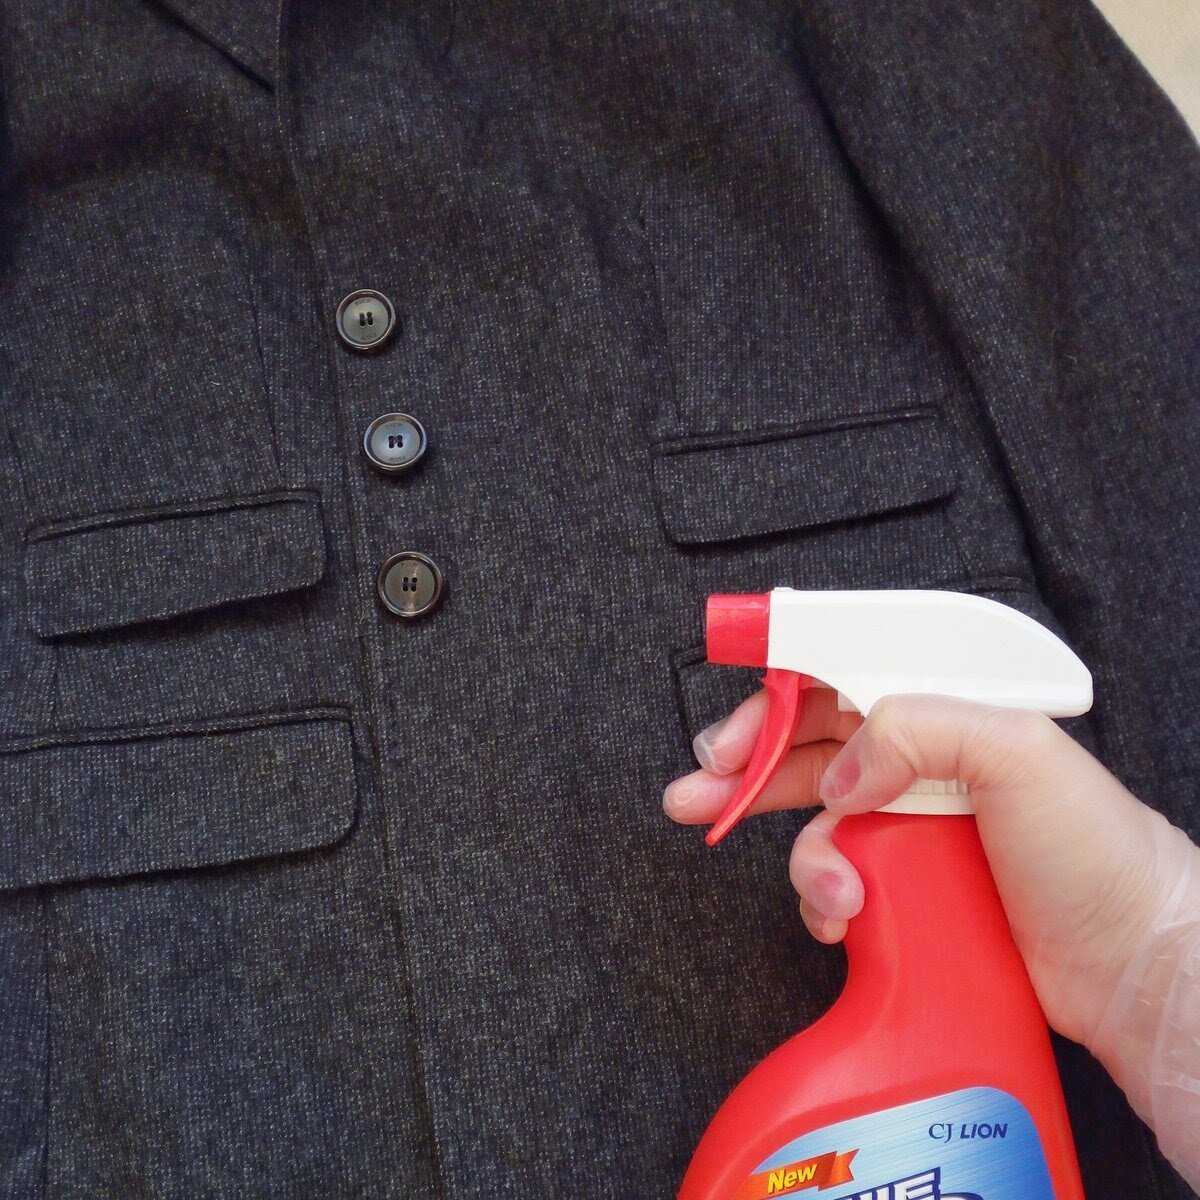 Как почистить пальто без стирки или постирать в стиральной машине?